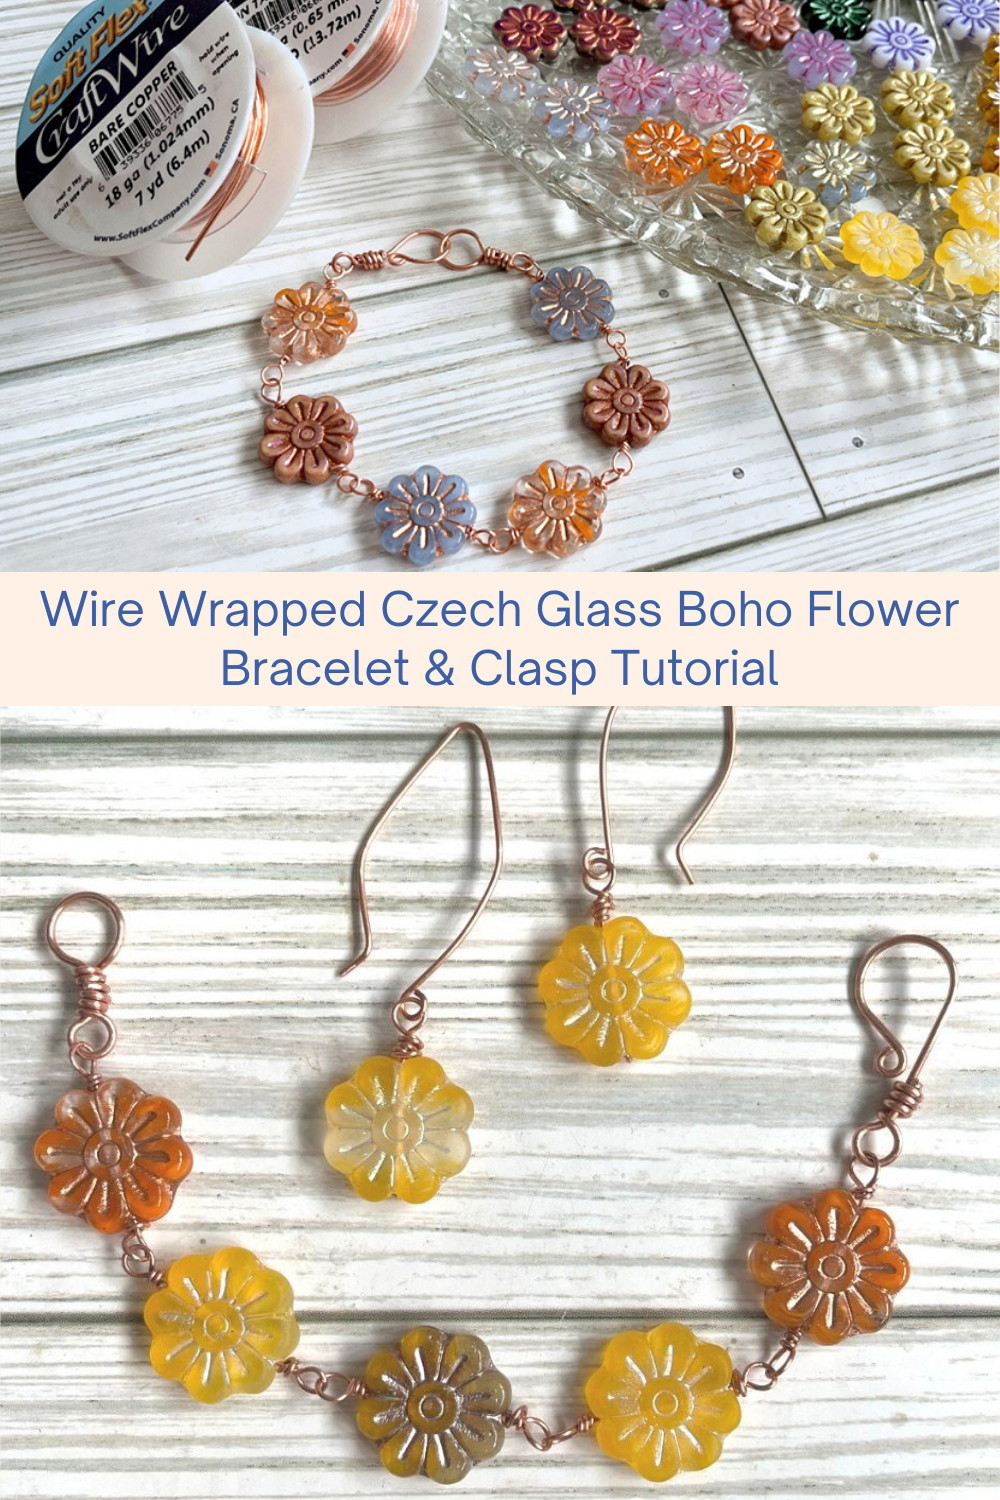 Wire Wrapped Czech Glass Boho Flower Bracelet & Clasp Tutorial Collage